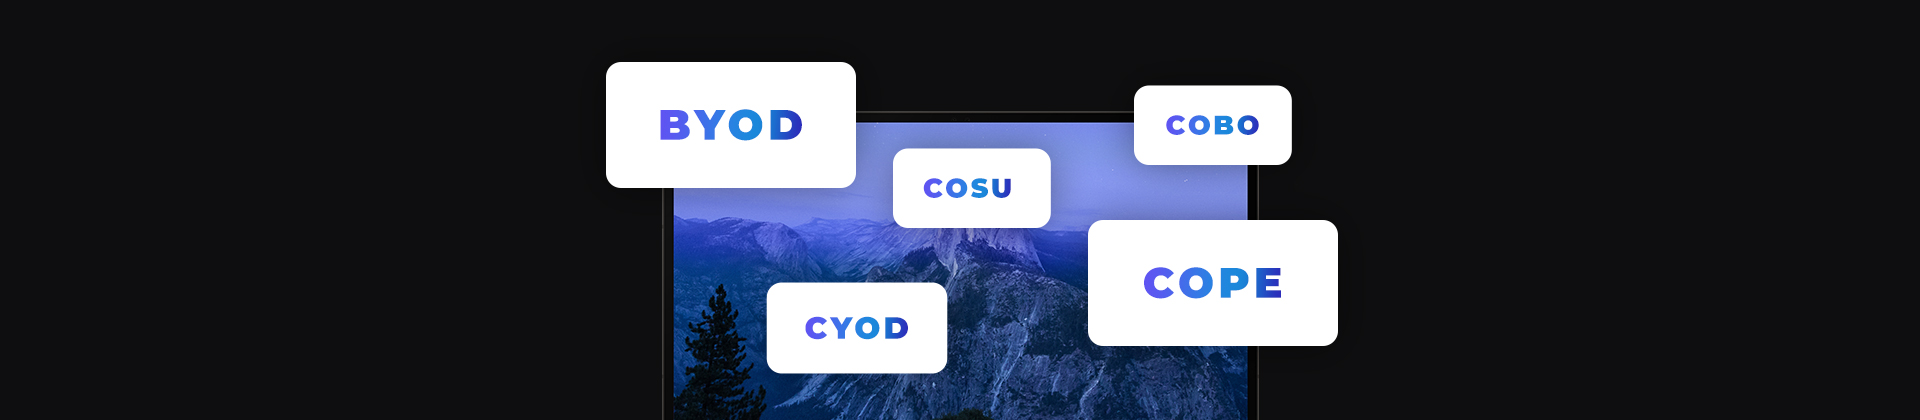 banner z ekranem laptopa oraz kafelkami, polityki zarządzania mobilnością BYOD CYOD COSU COBO COPE